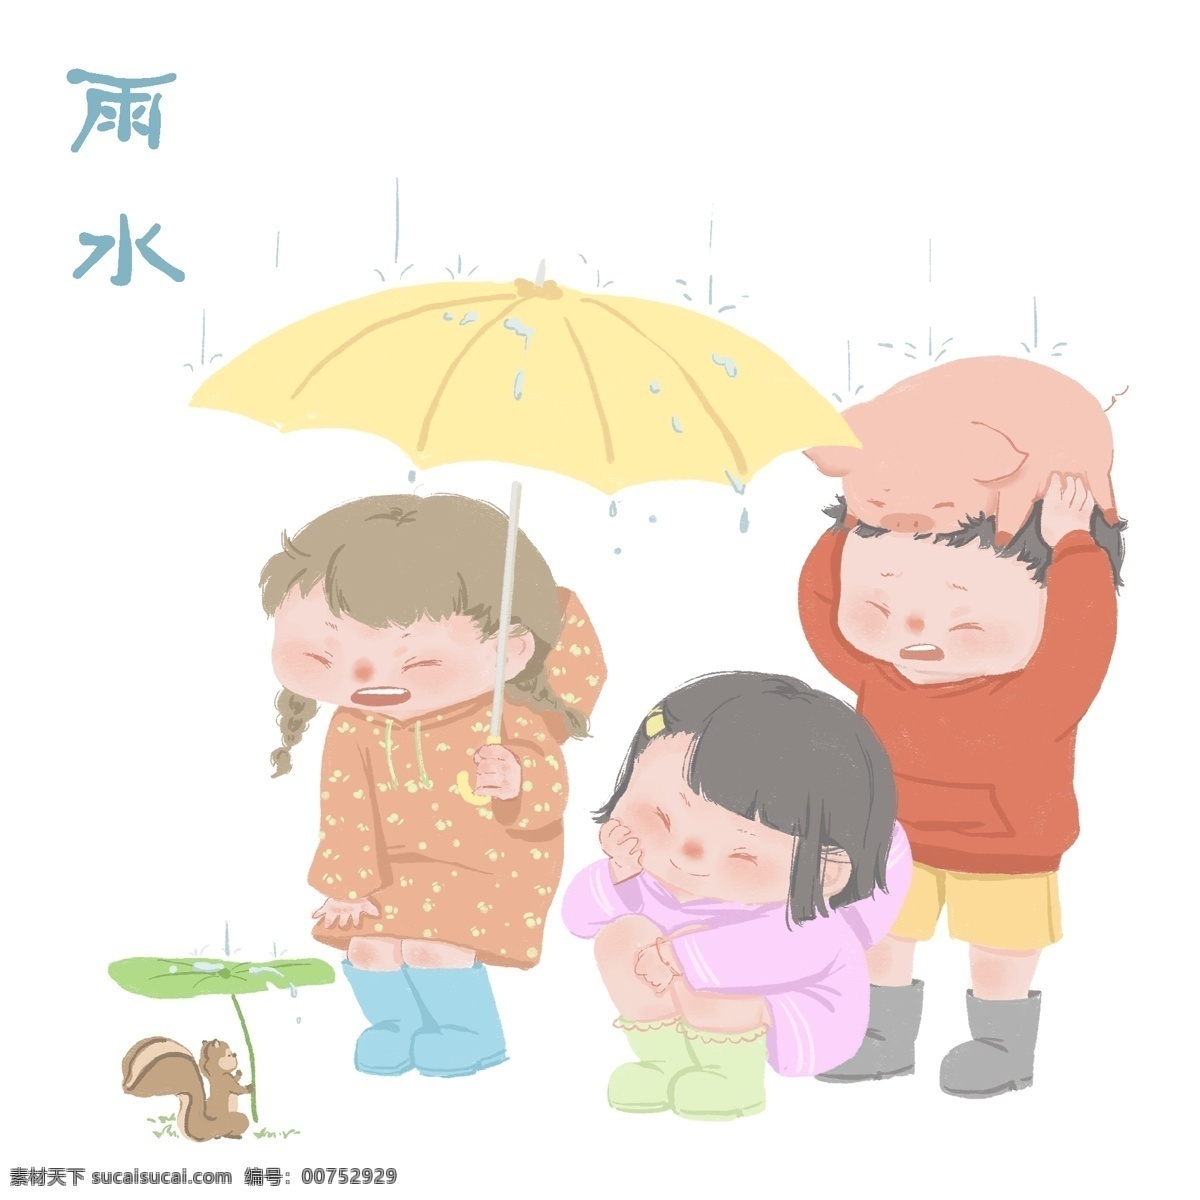 2019 年 手绘 中国 风 节气 雨水 下雨 中国风 叶子 蓝色 紫色 黄色 年画 24节气 小男孩儿 小女孩儿 小松鼠 开心 金猪 打伞